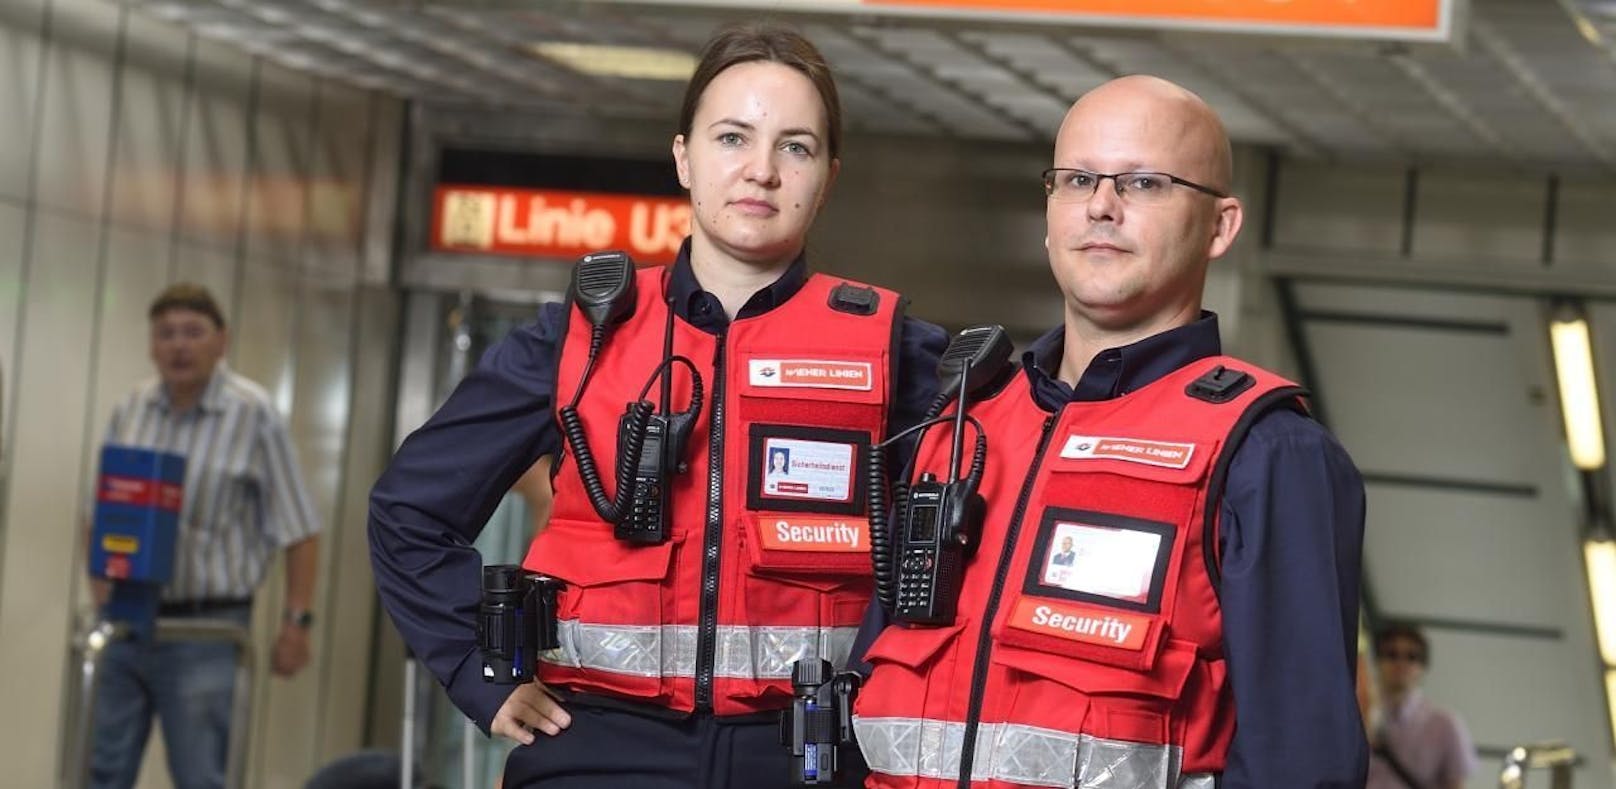 Schon jetzt sind 40 Securitys des neuen Wiener-Linien-Sicherheitsteams unterwegs. Bis Ende des Jahres werden es 50 Sicherheitsmitarbeiter sein.